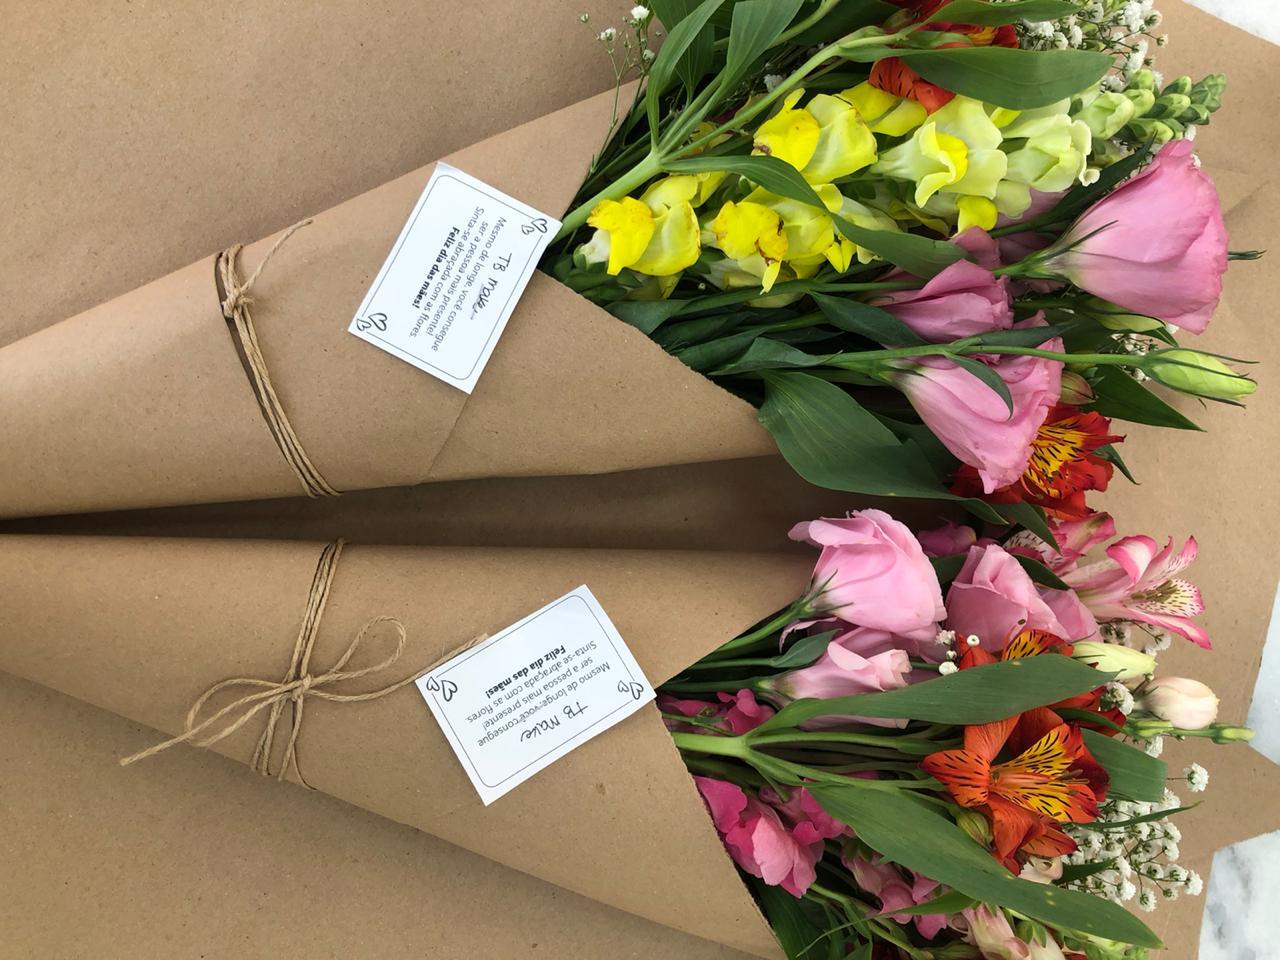 Campanha de Dia das Mães homenageia mulheres e apoia comerciantes de flores